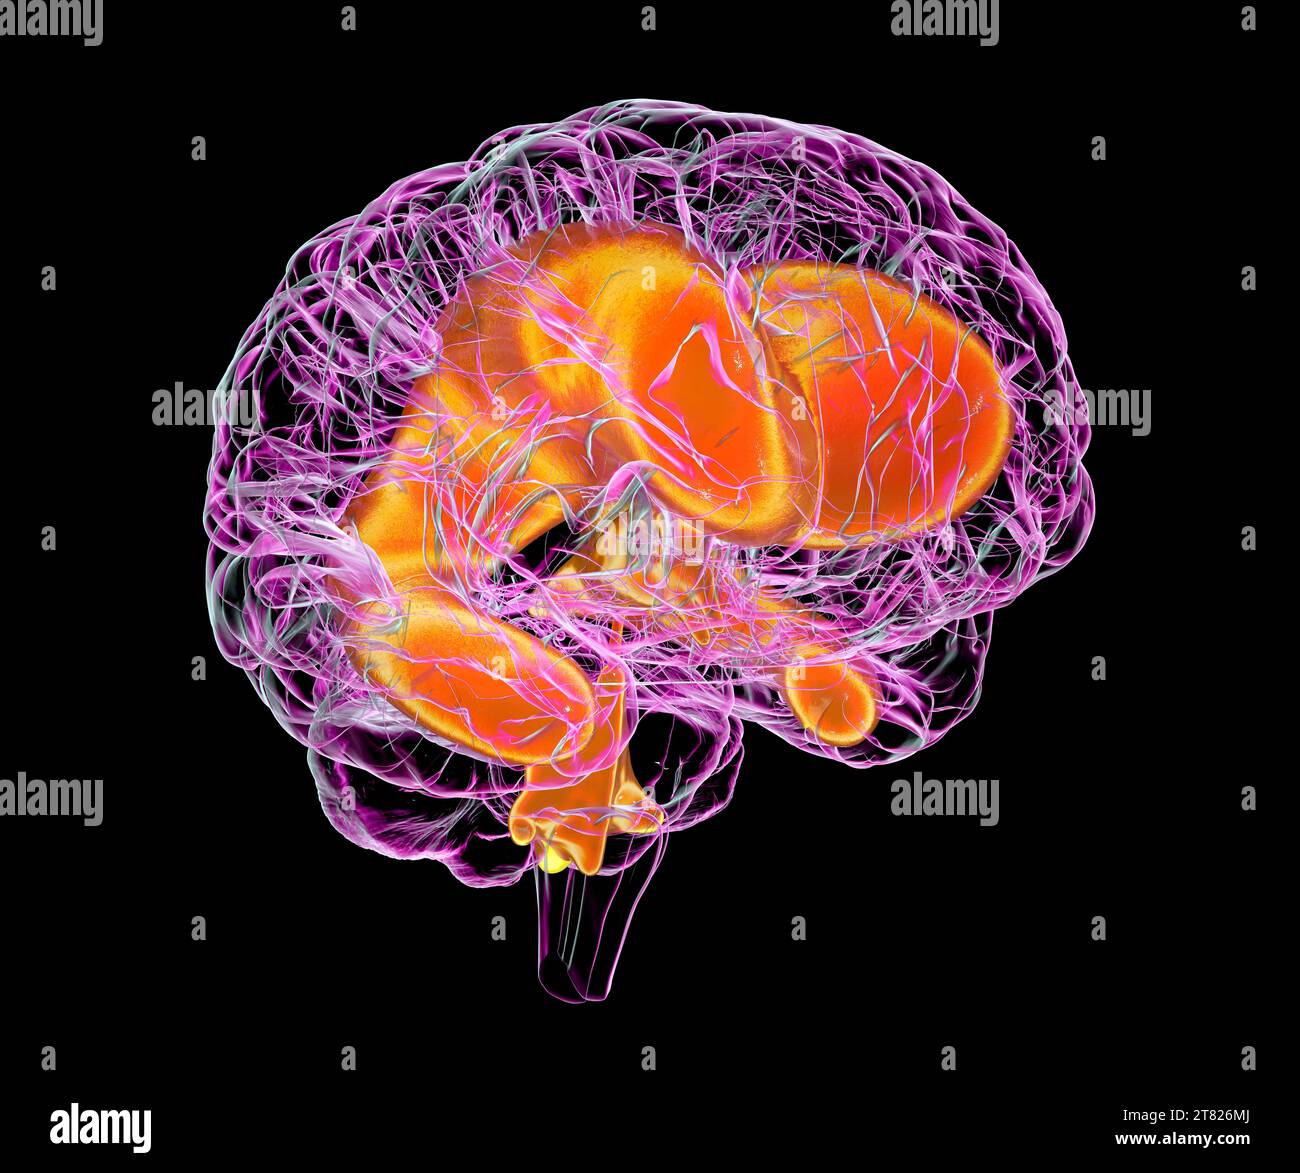 Vergrößerte Ventrikel des kindlichen Gehirns, Illustration Stockfoto